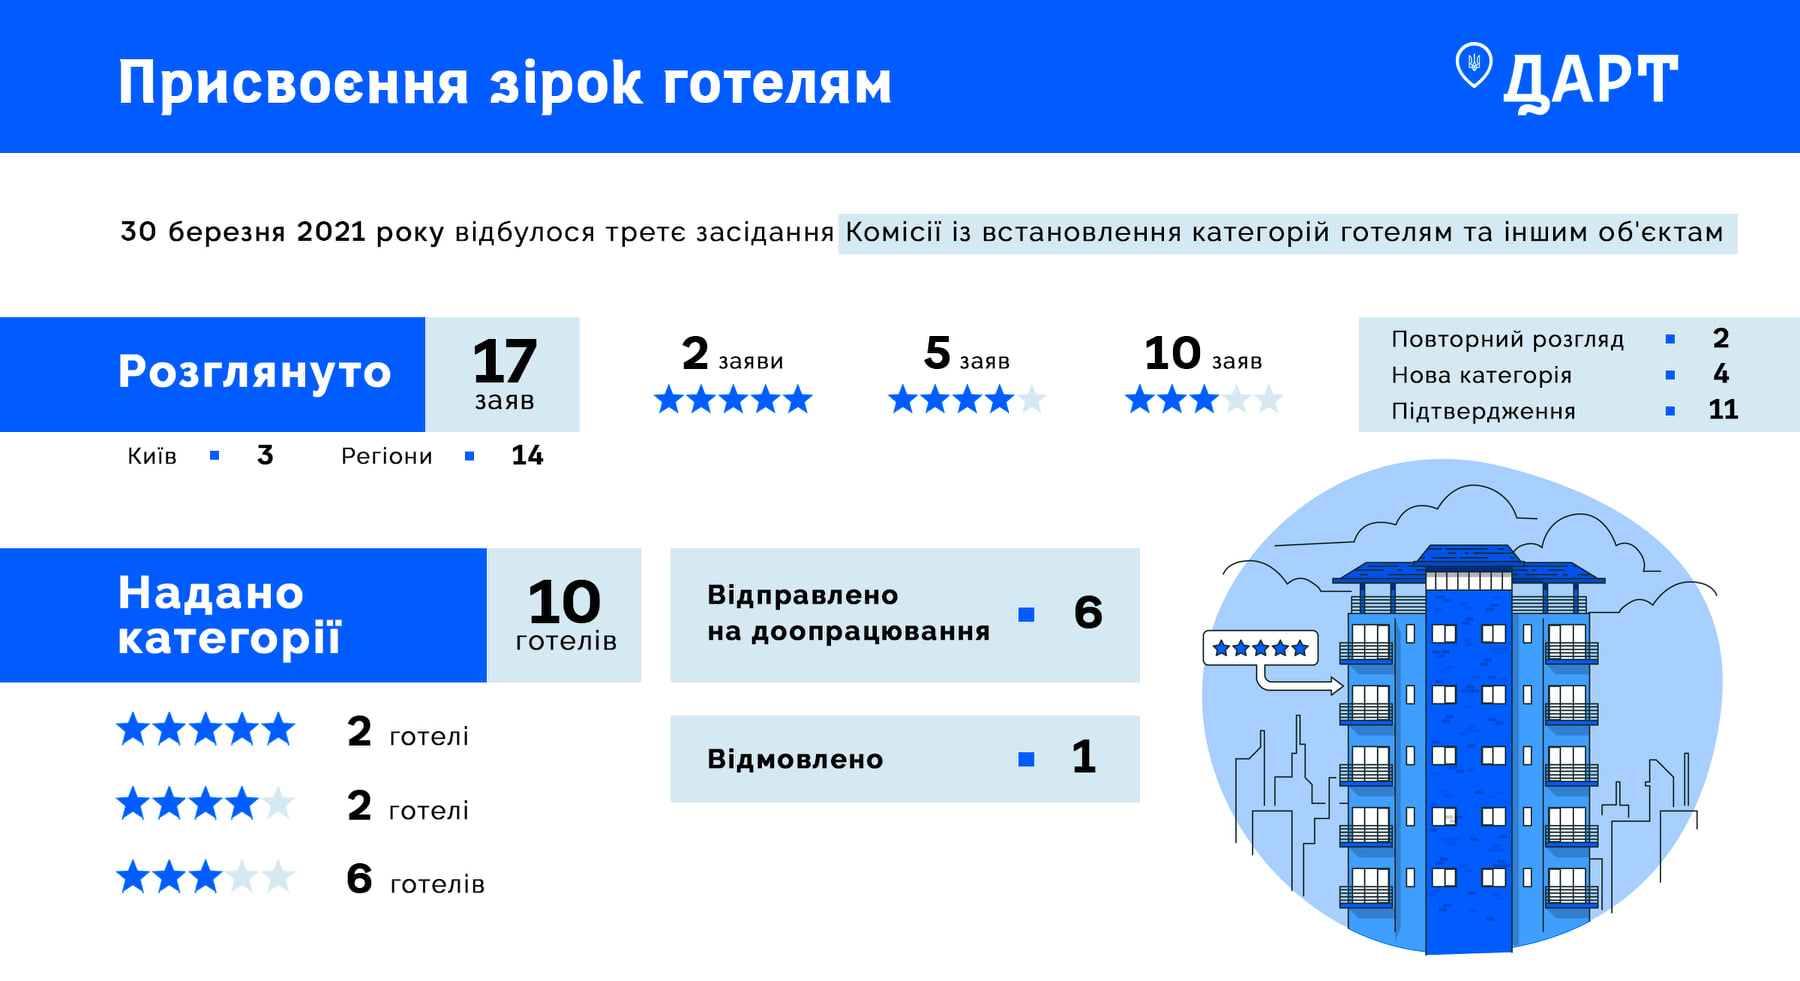 Еще два отеля в Украине получили категорию "5 звезд". Один из них находится в селе